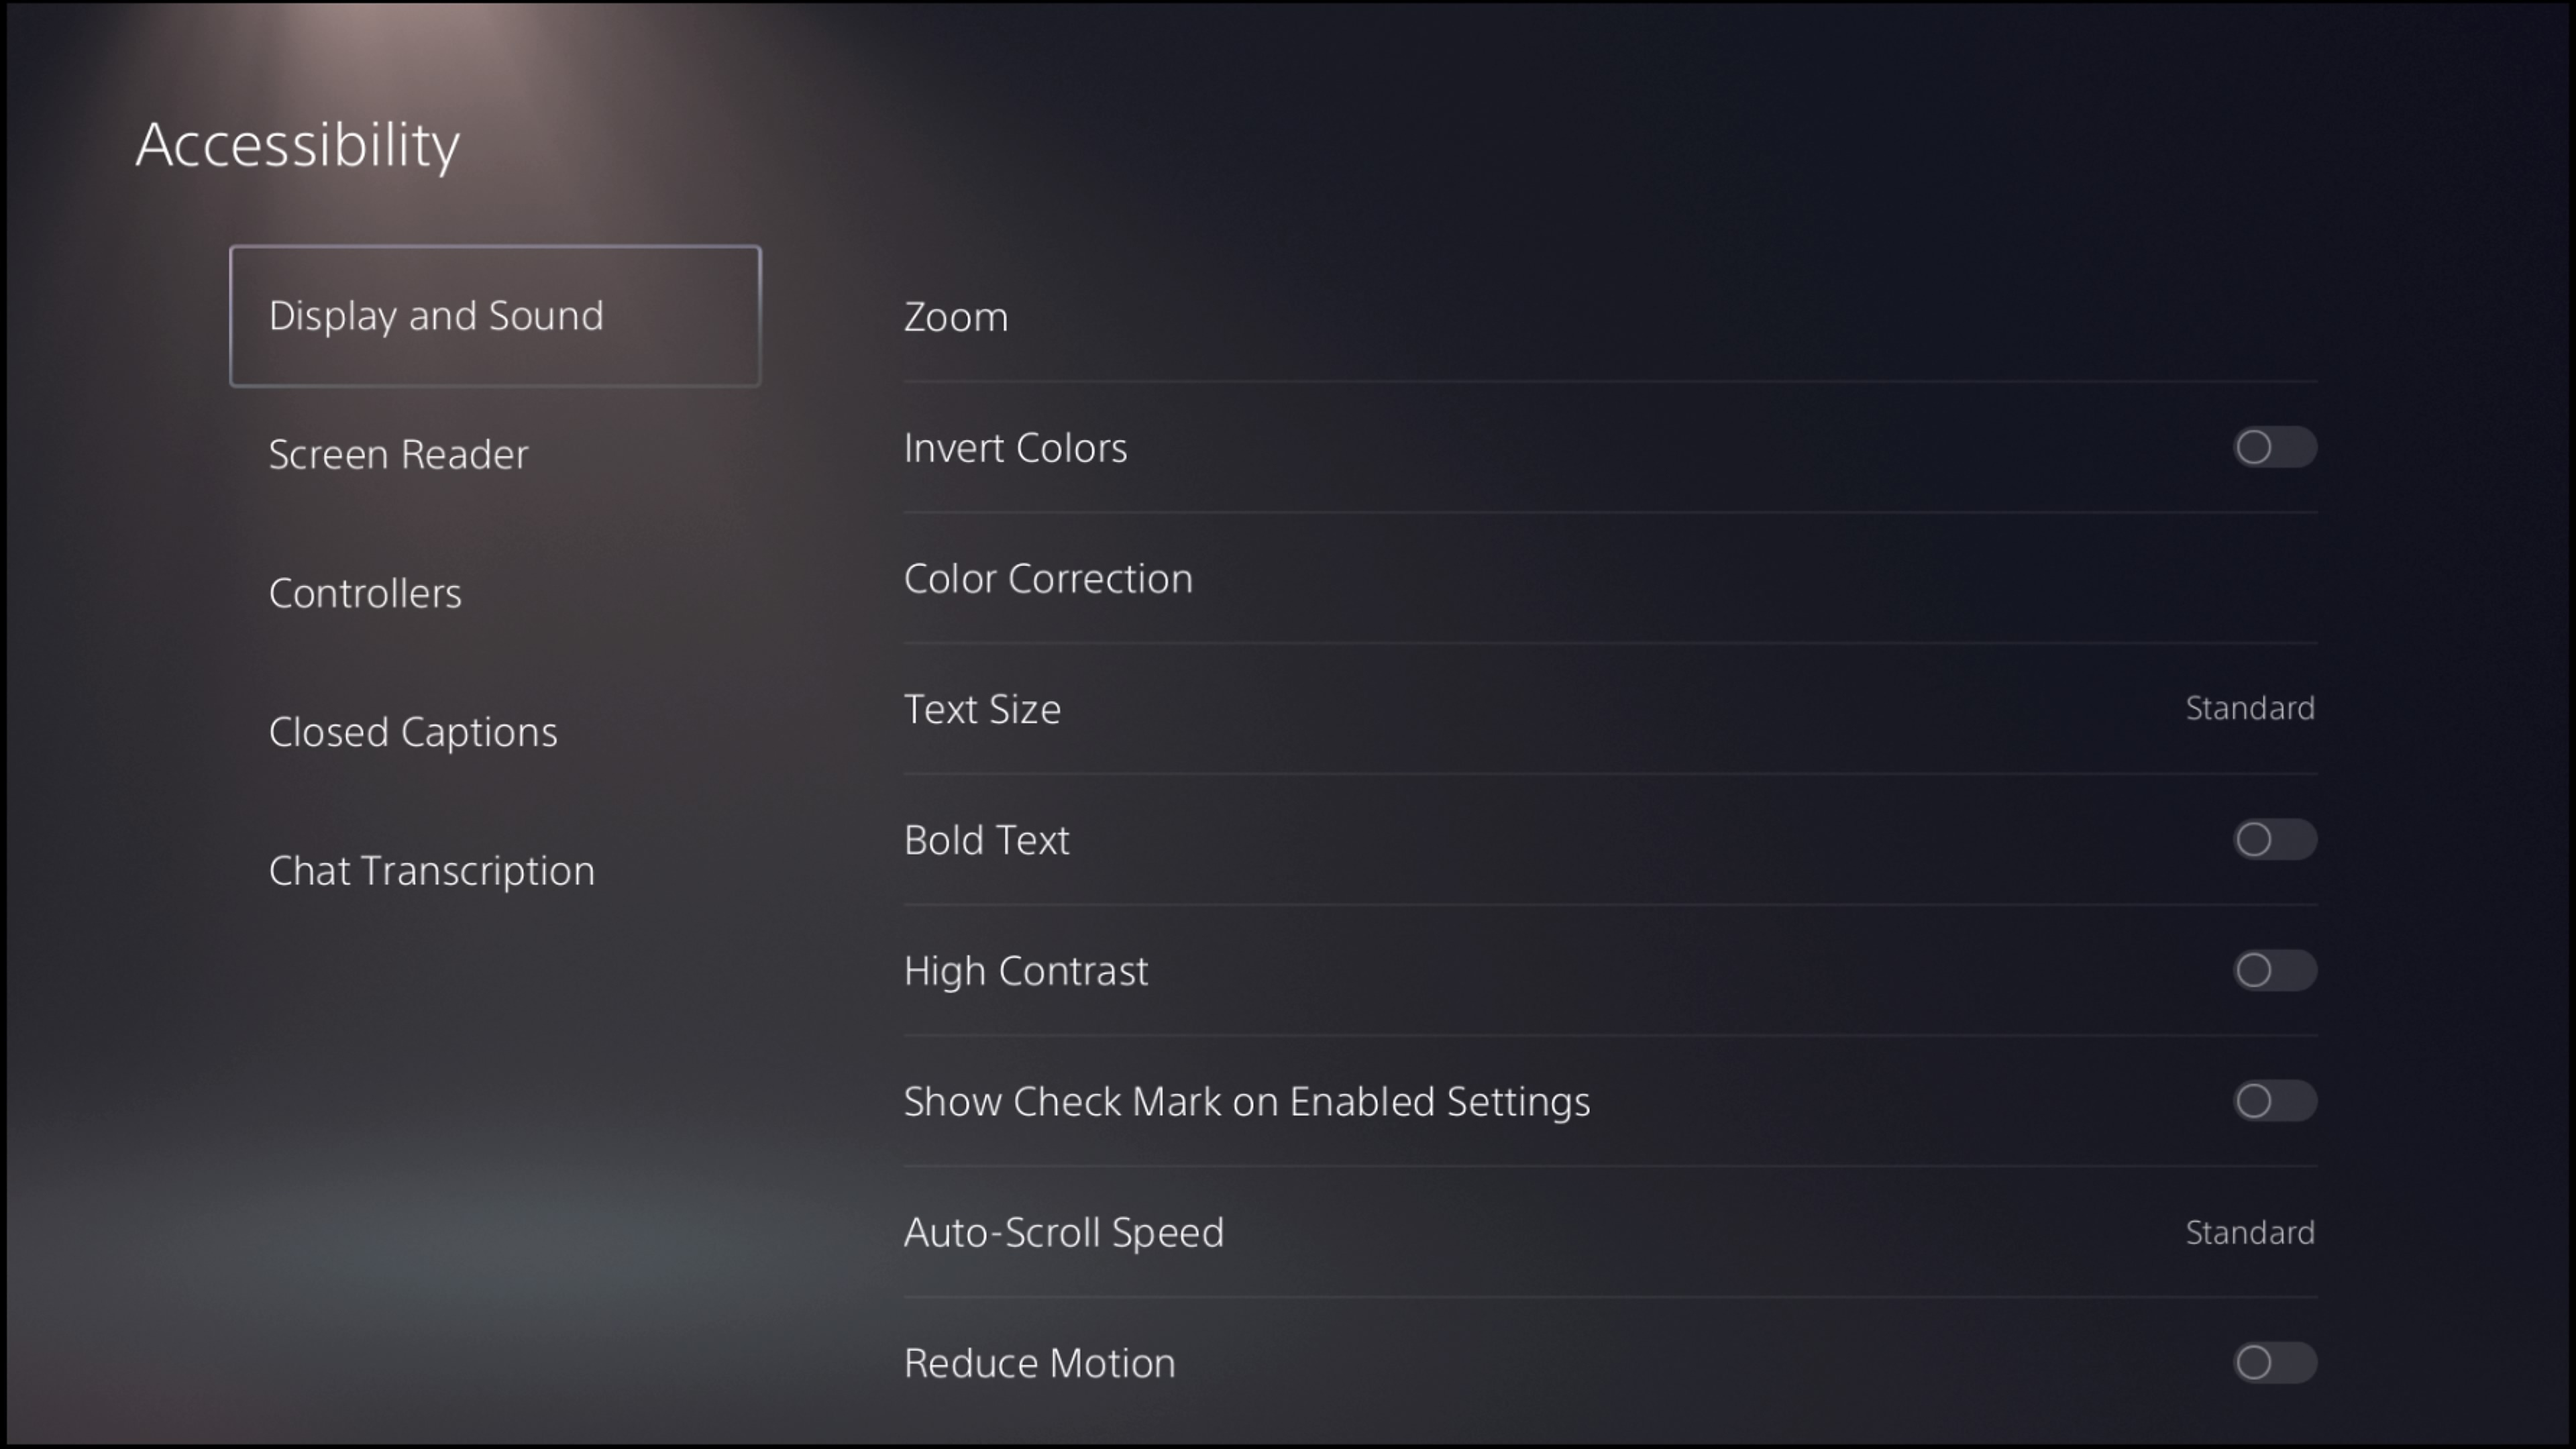 צילום מסך של ממשק המשתמש ב-PS5 להגדרות תצוגה וצליל